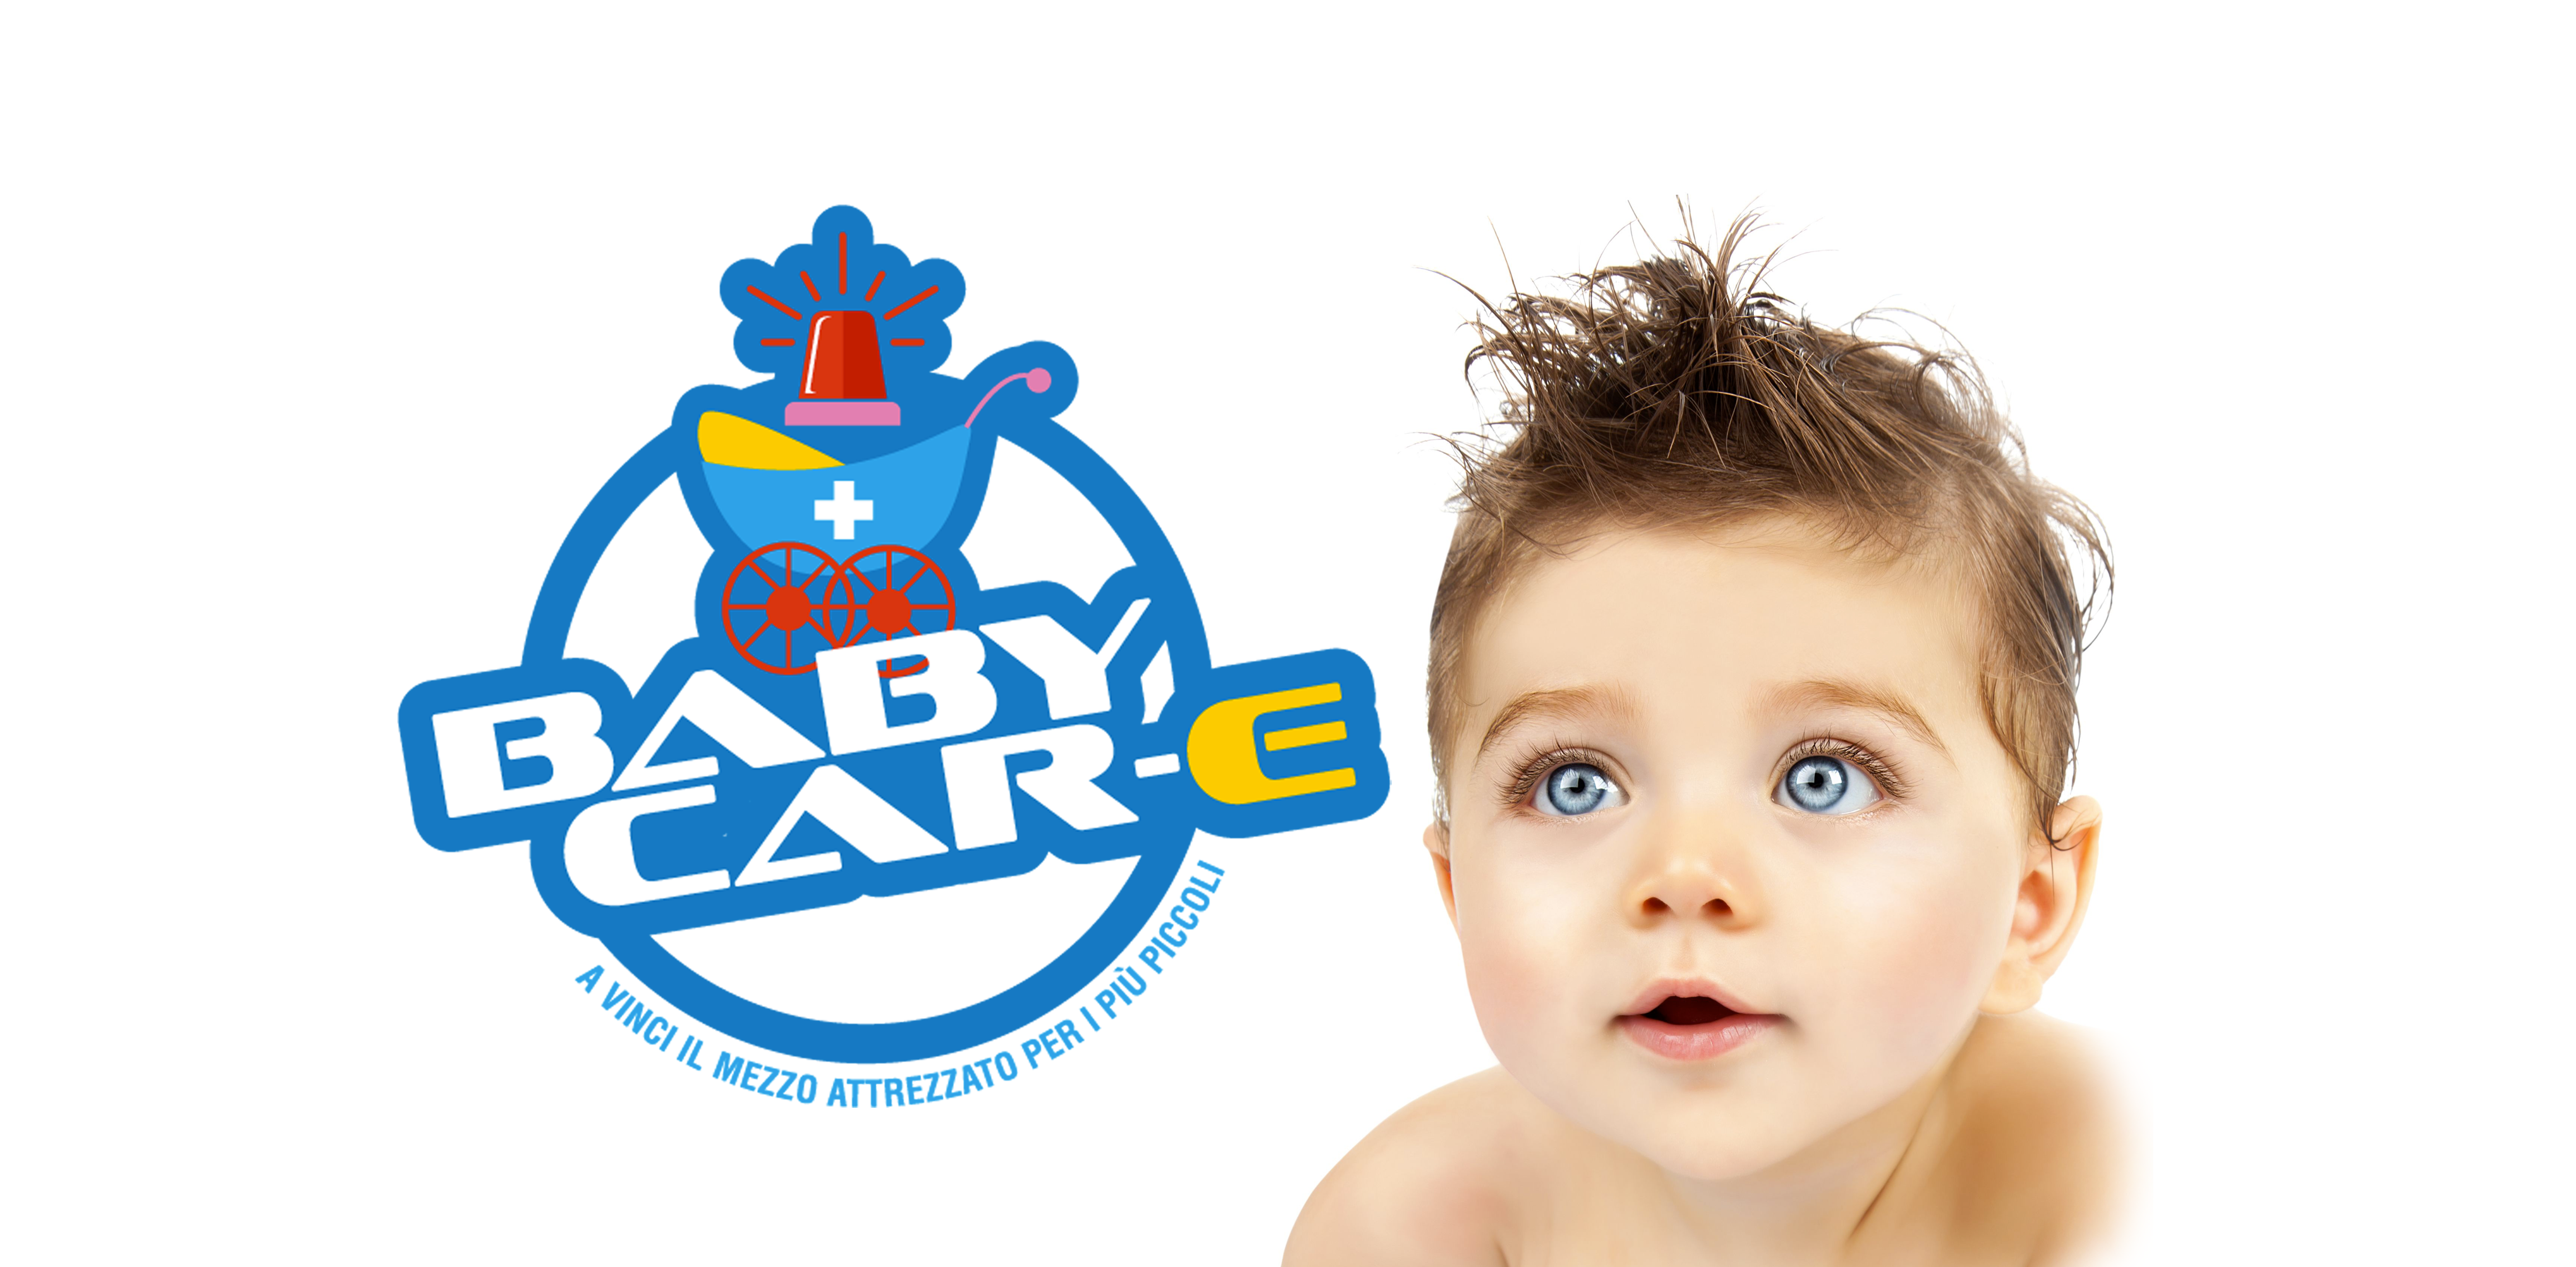 Baby Car-E: la nuova campagna crowdfunding della Misericordia di Vinci